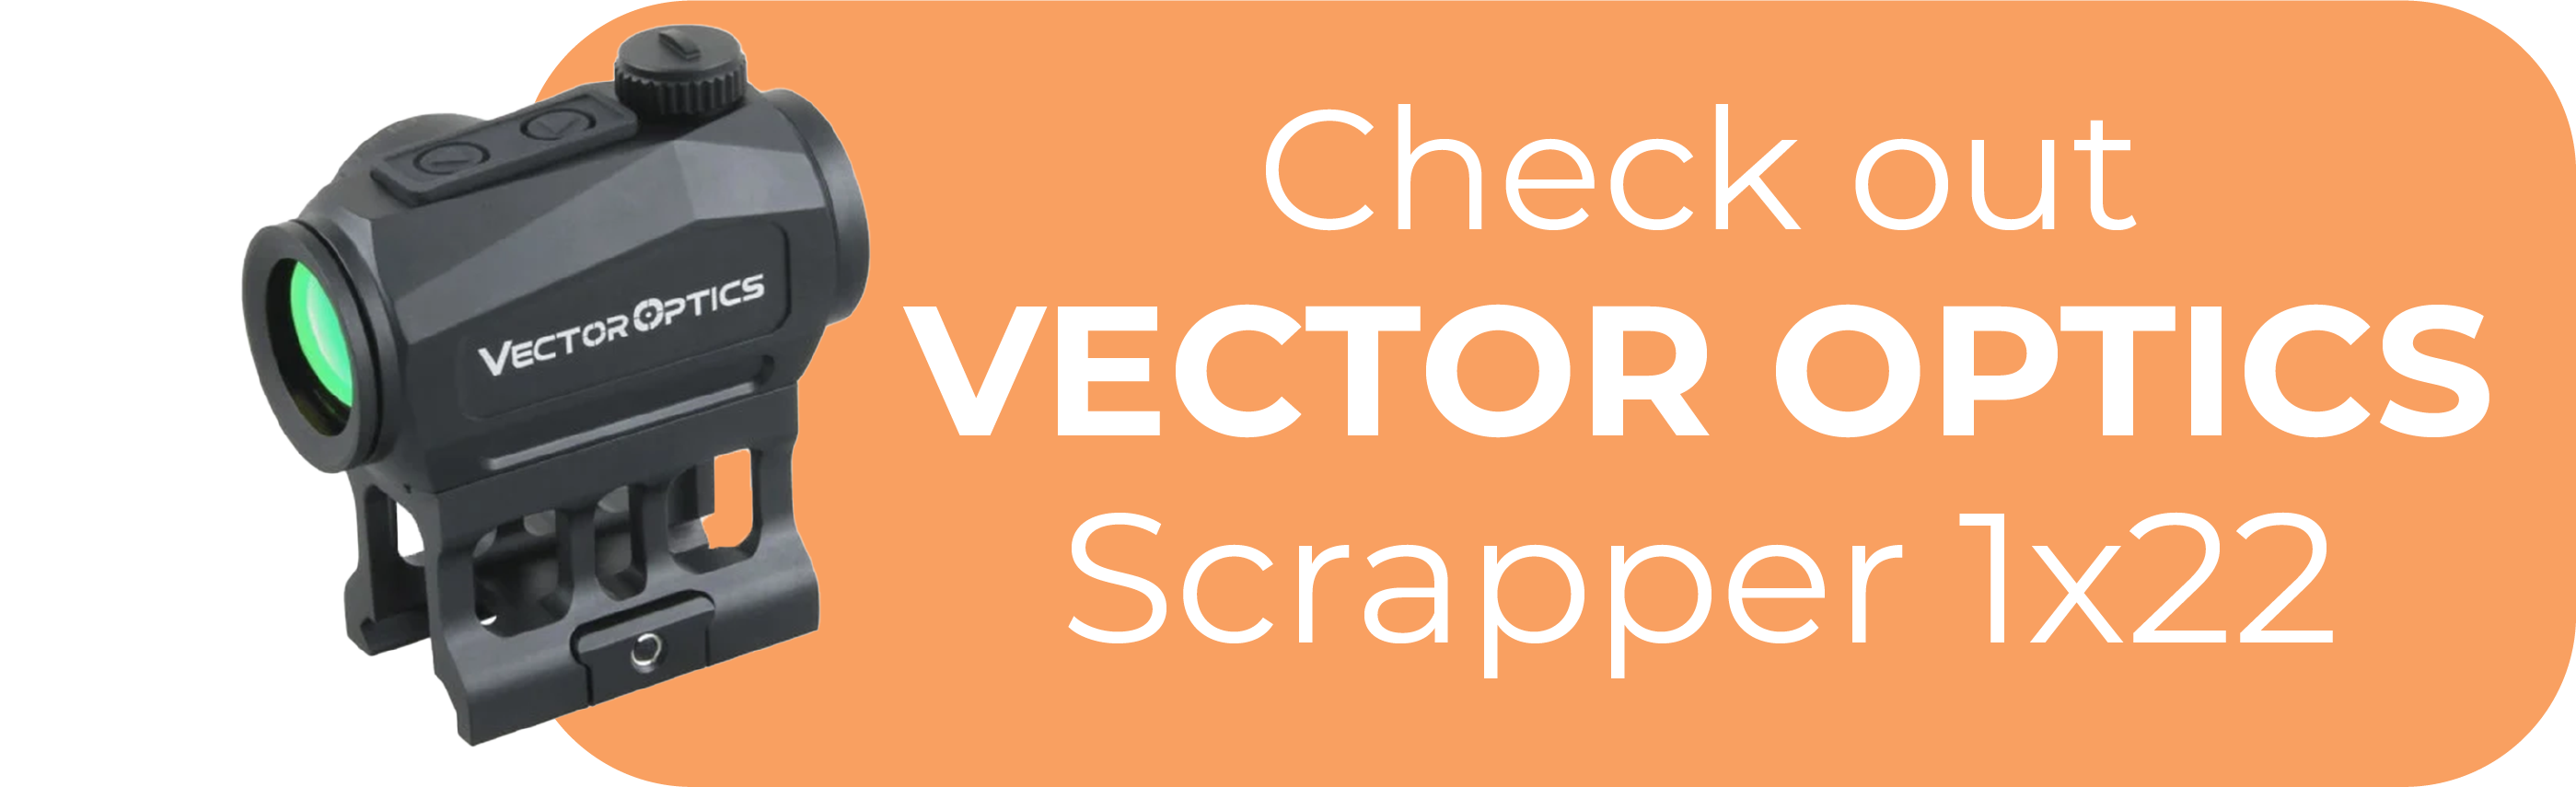 Vector Optics Scrapper 1x22 Footprint